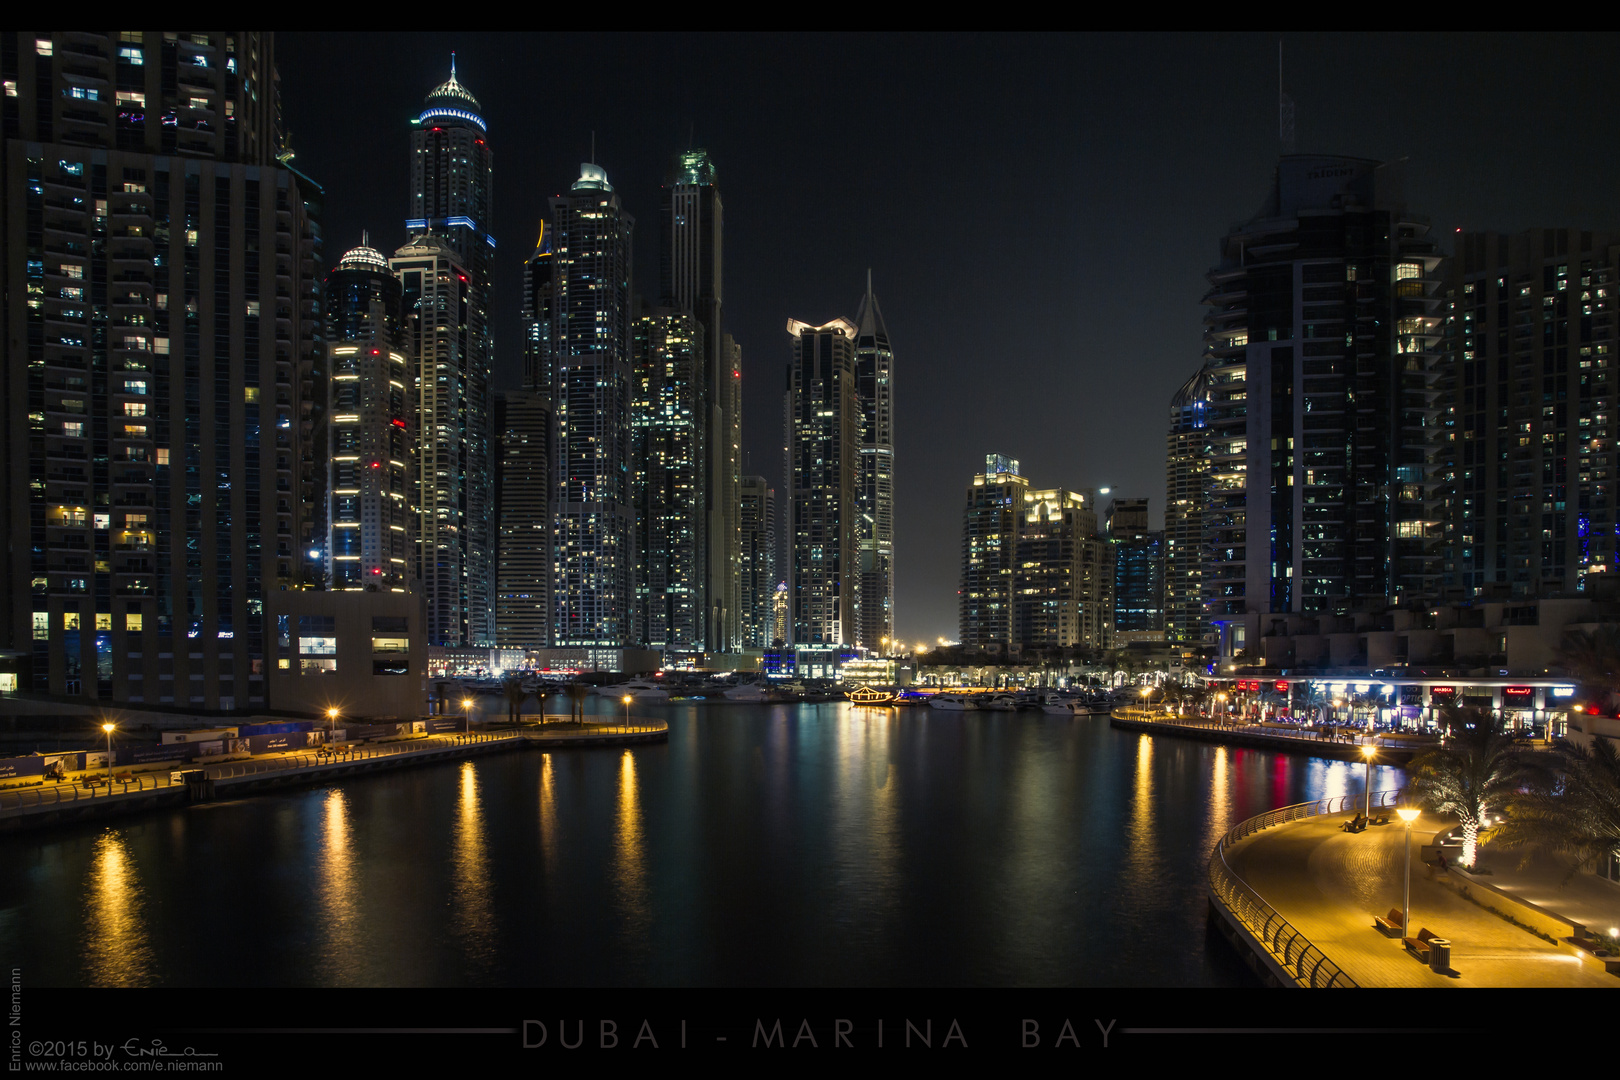 Dubai - Marina Bay